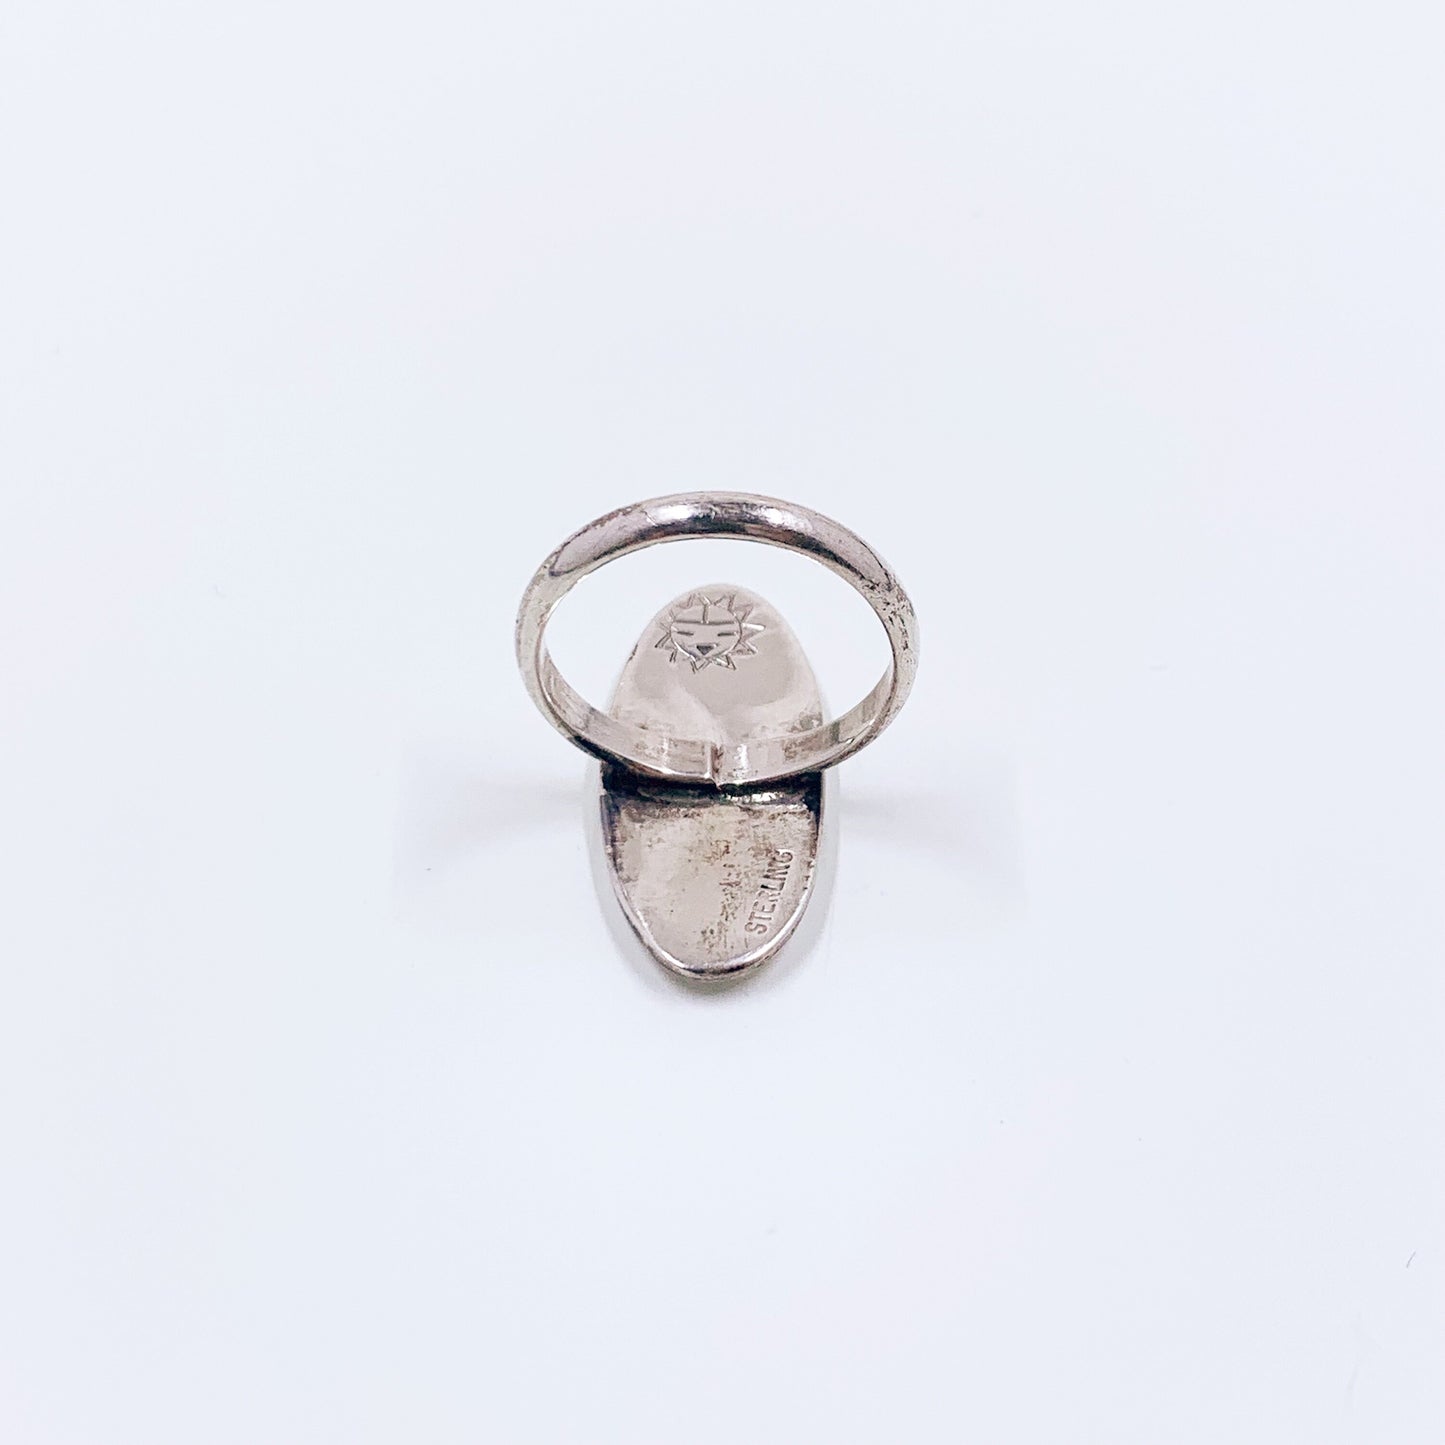 Vintage Sterling Silver Hopi Ring Overlay | Native American Sterling Silver Ring | Size 5 Ring